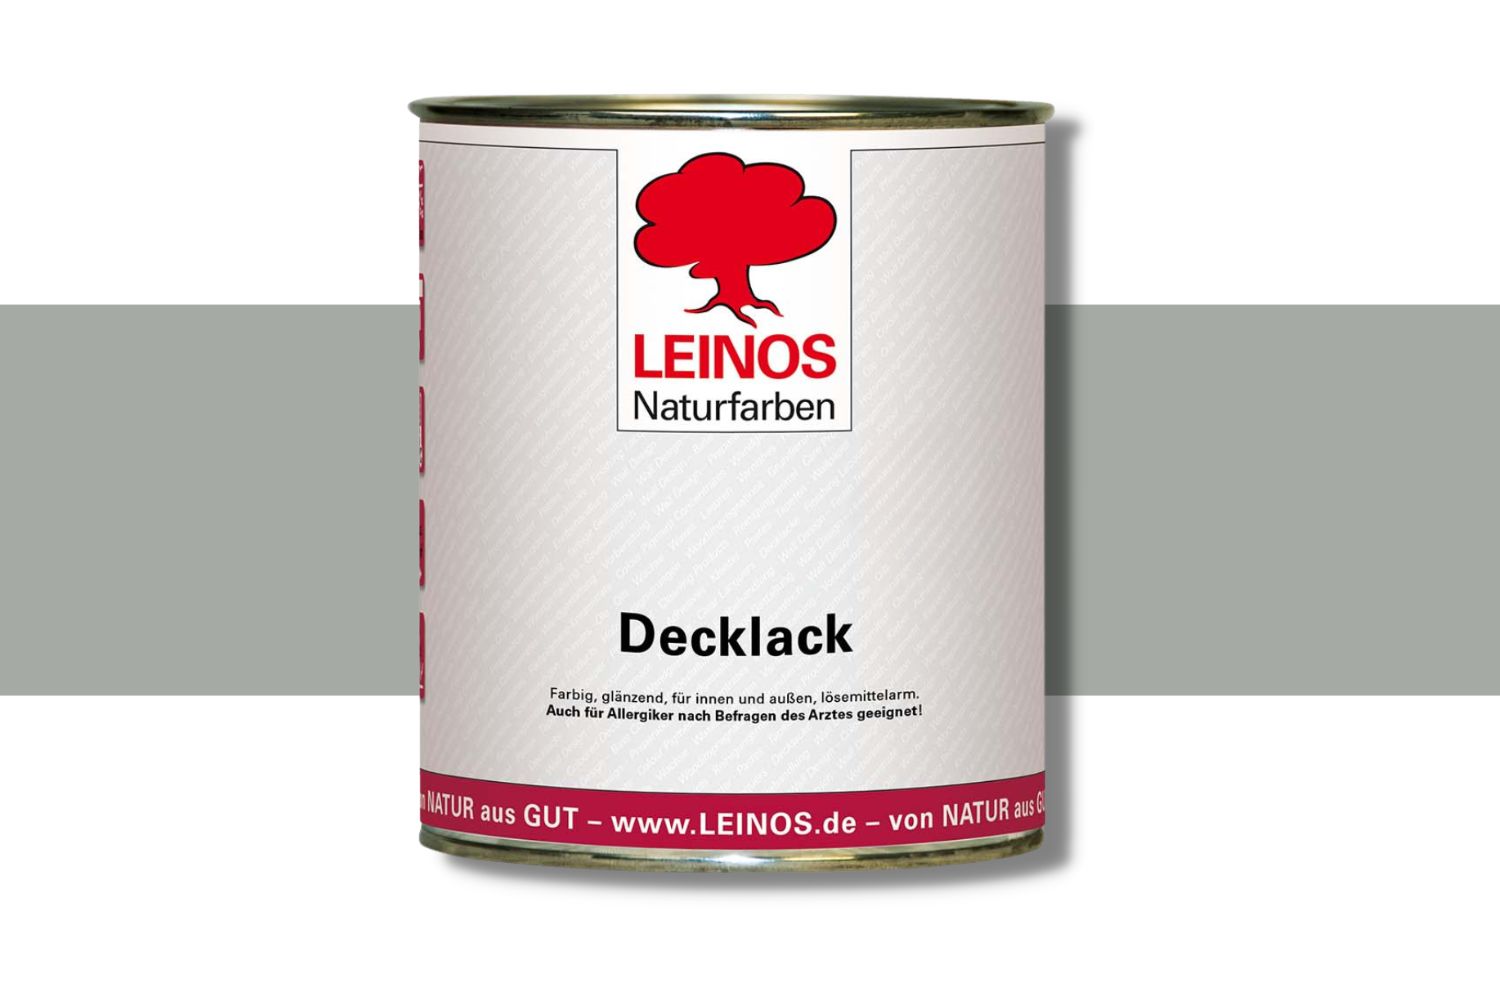 Leinos Decklack 840